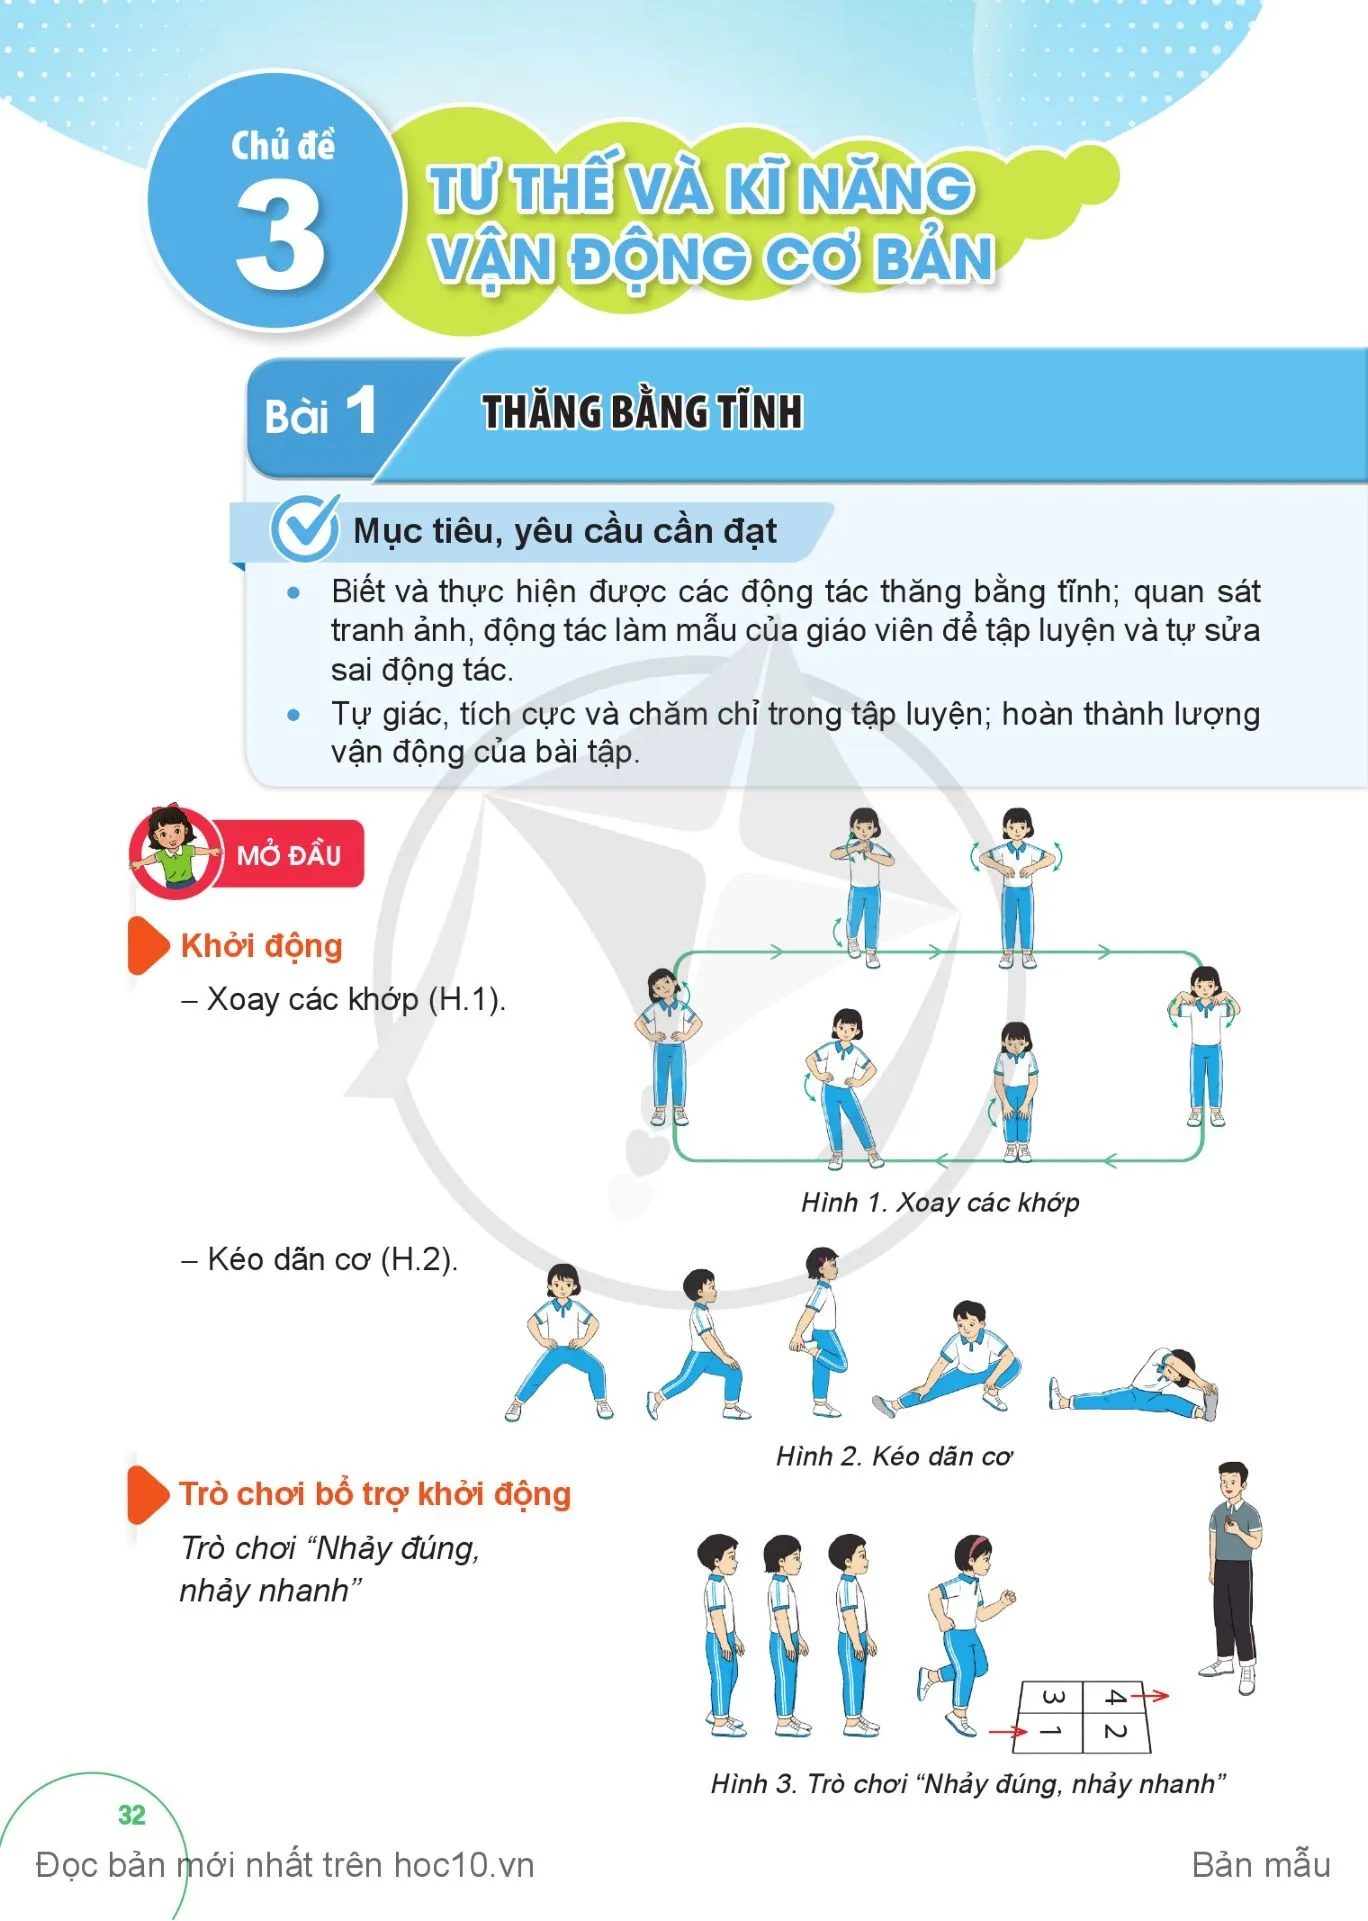 Bài 2. Động tác lưng, động tác chân, động tác nhảy và động tác điều hoà với gậy